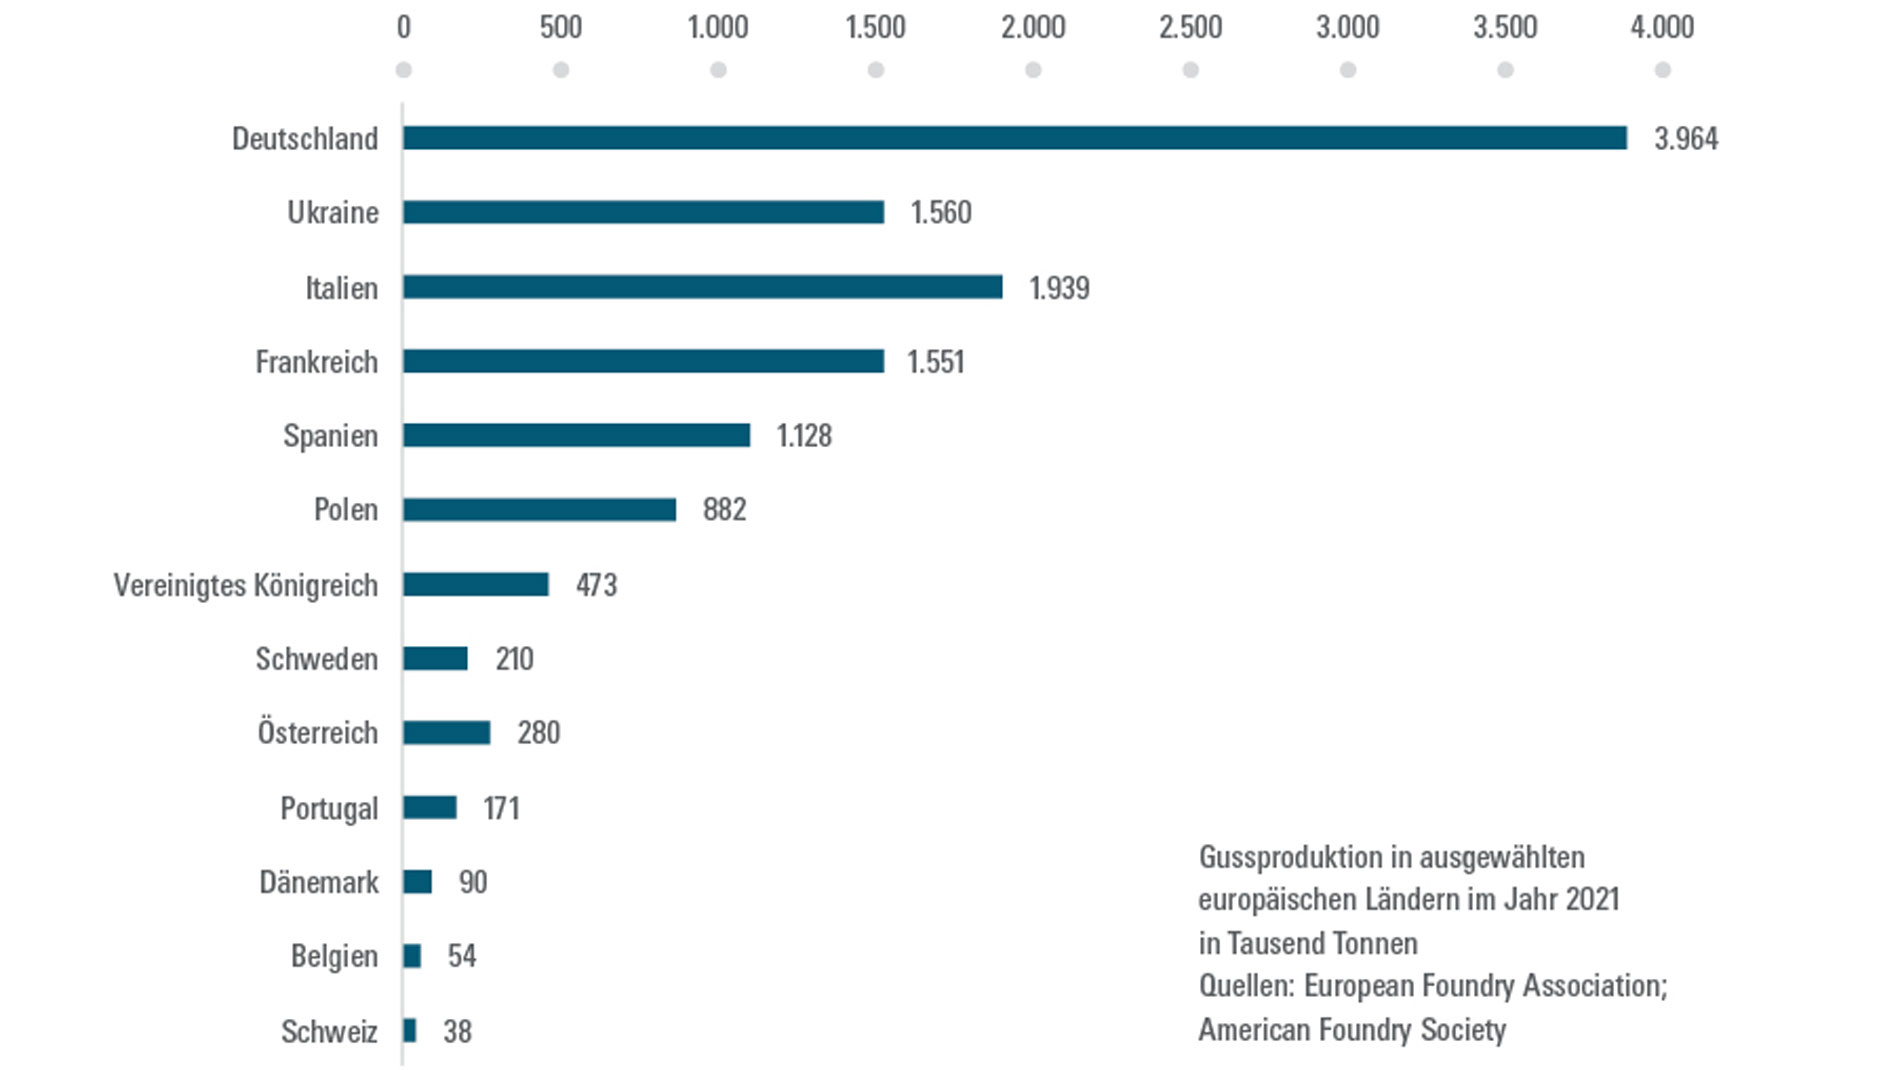 Gussproduktion in ausgewählten europäischen Ländern im Jahr 2021 in Tausend Tonnen. Quellen: European Foundry Association; American Foundry Society